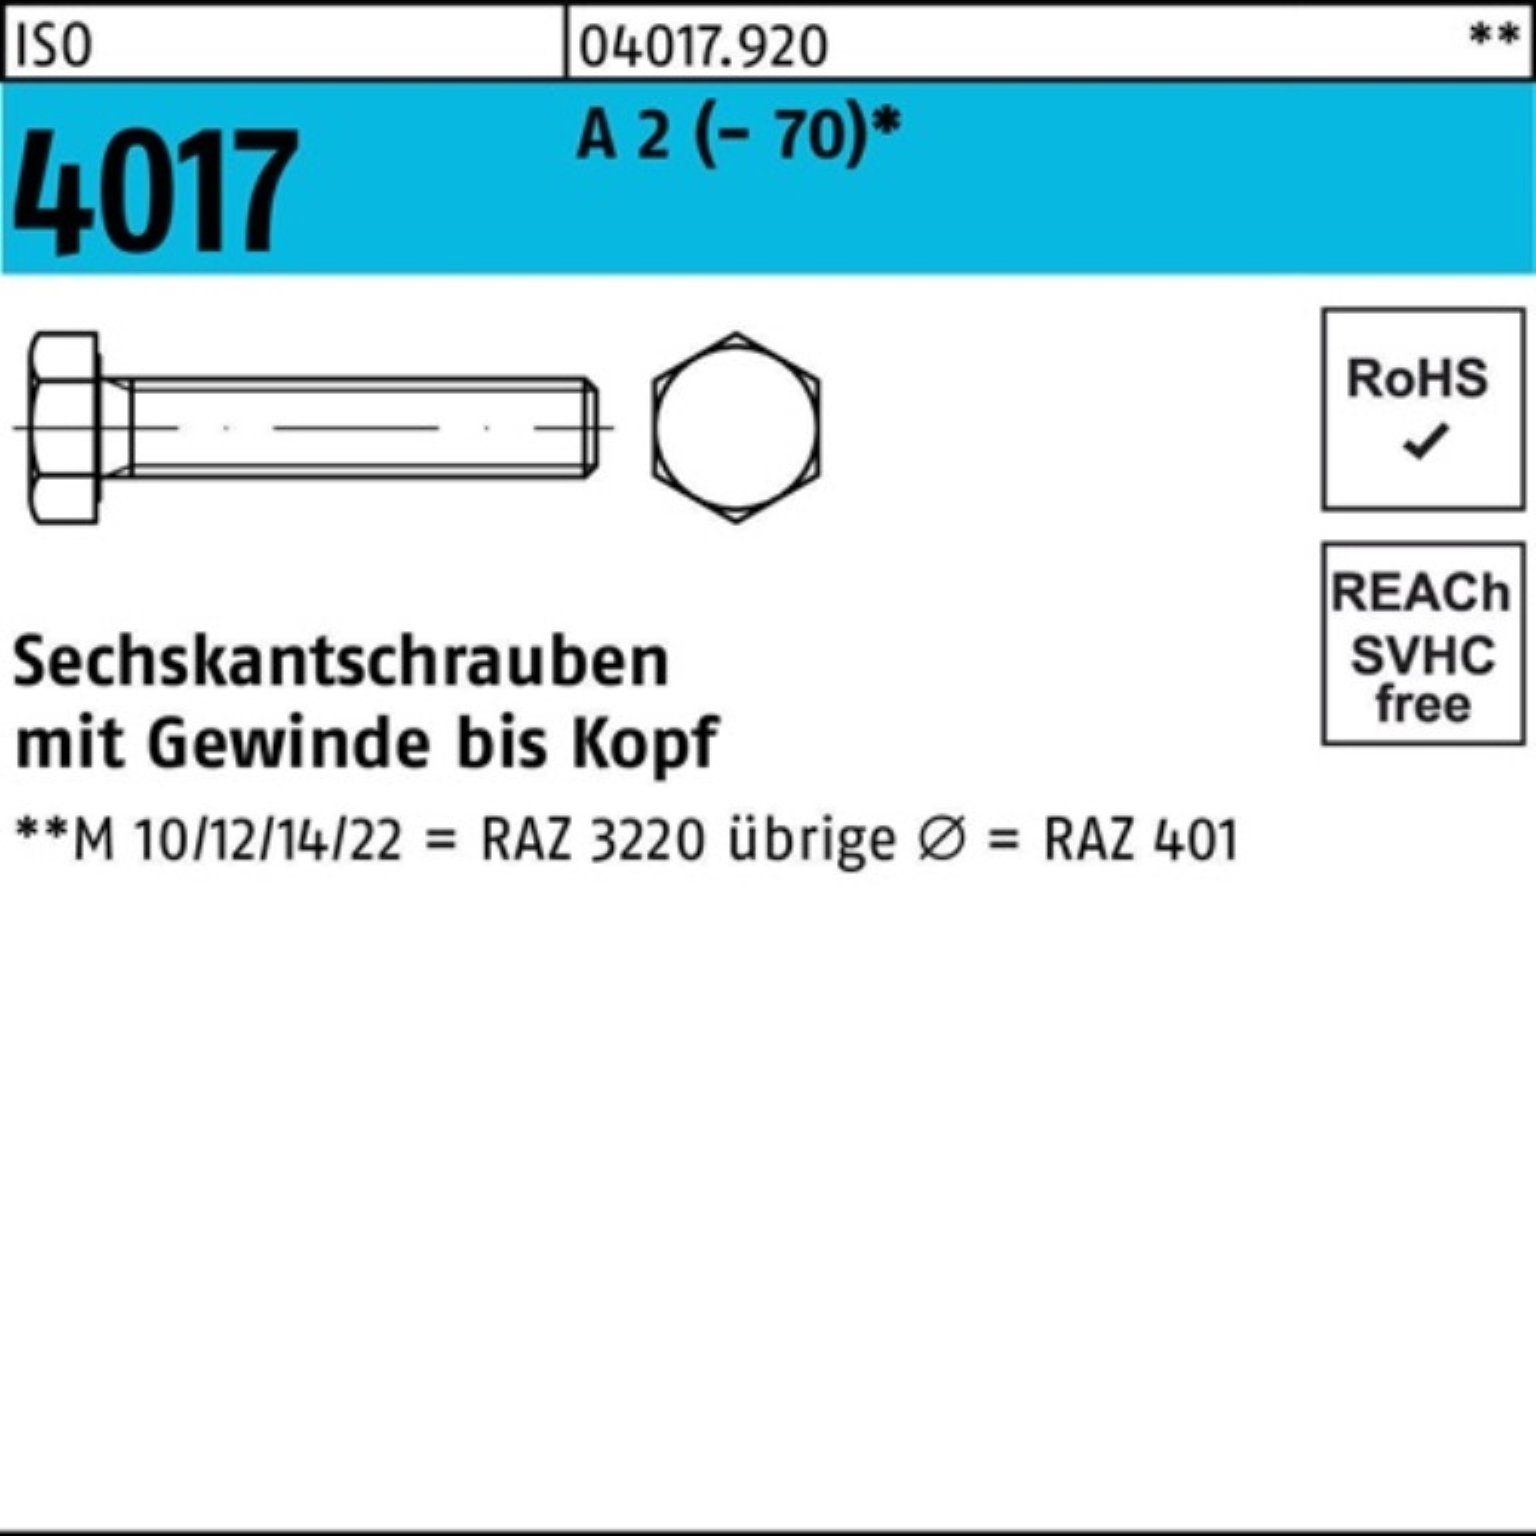 Bufab Sechskantschraube 200er Pack Sechskantschraube ISO 4017 VG M5x 35 A 2 (70) 200 Stück